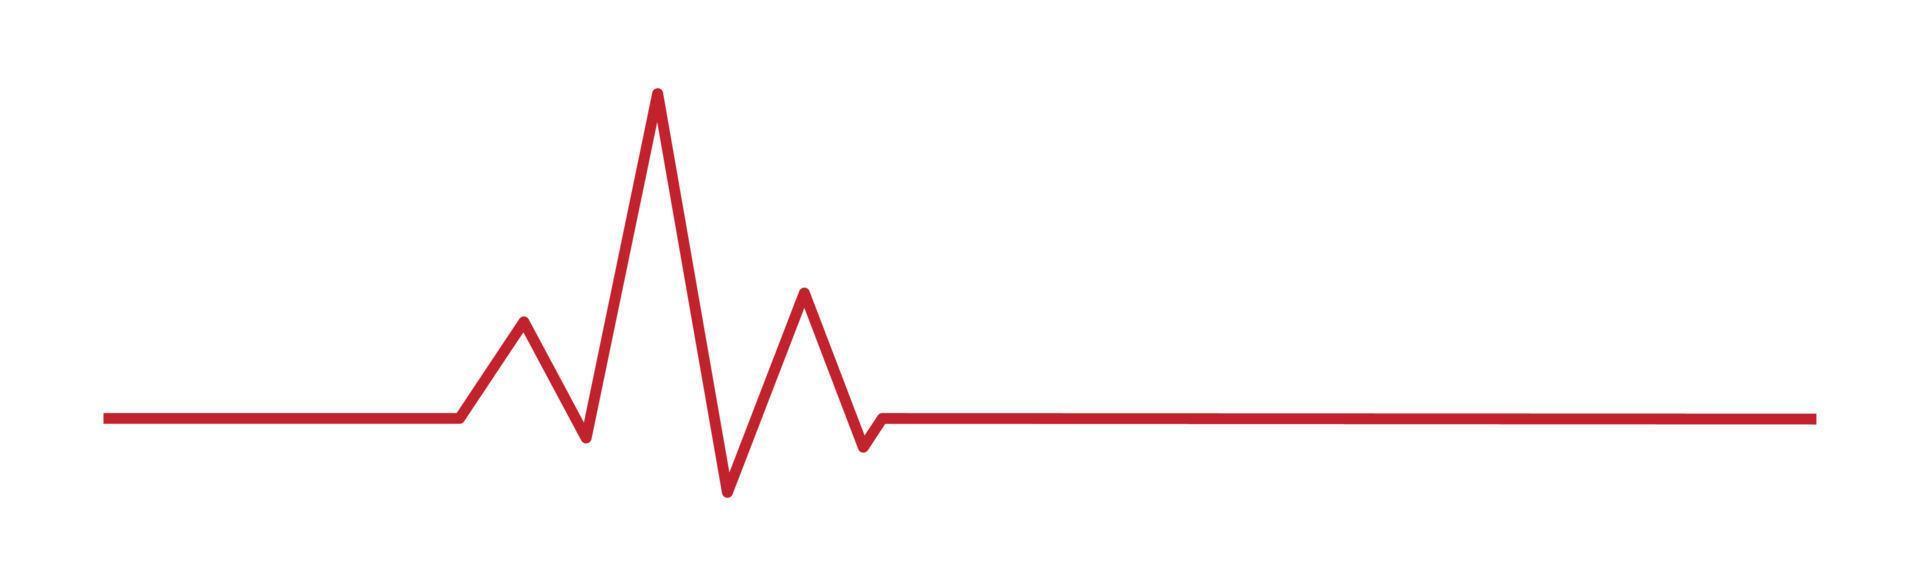 hjärtpuls - böjd röd linje på en vit bakgrund - vektor